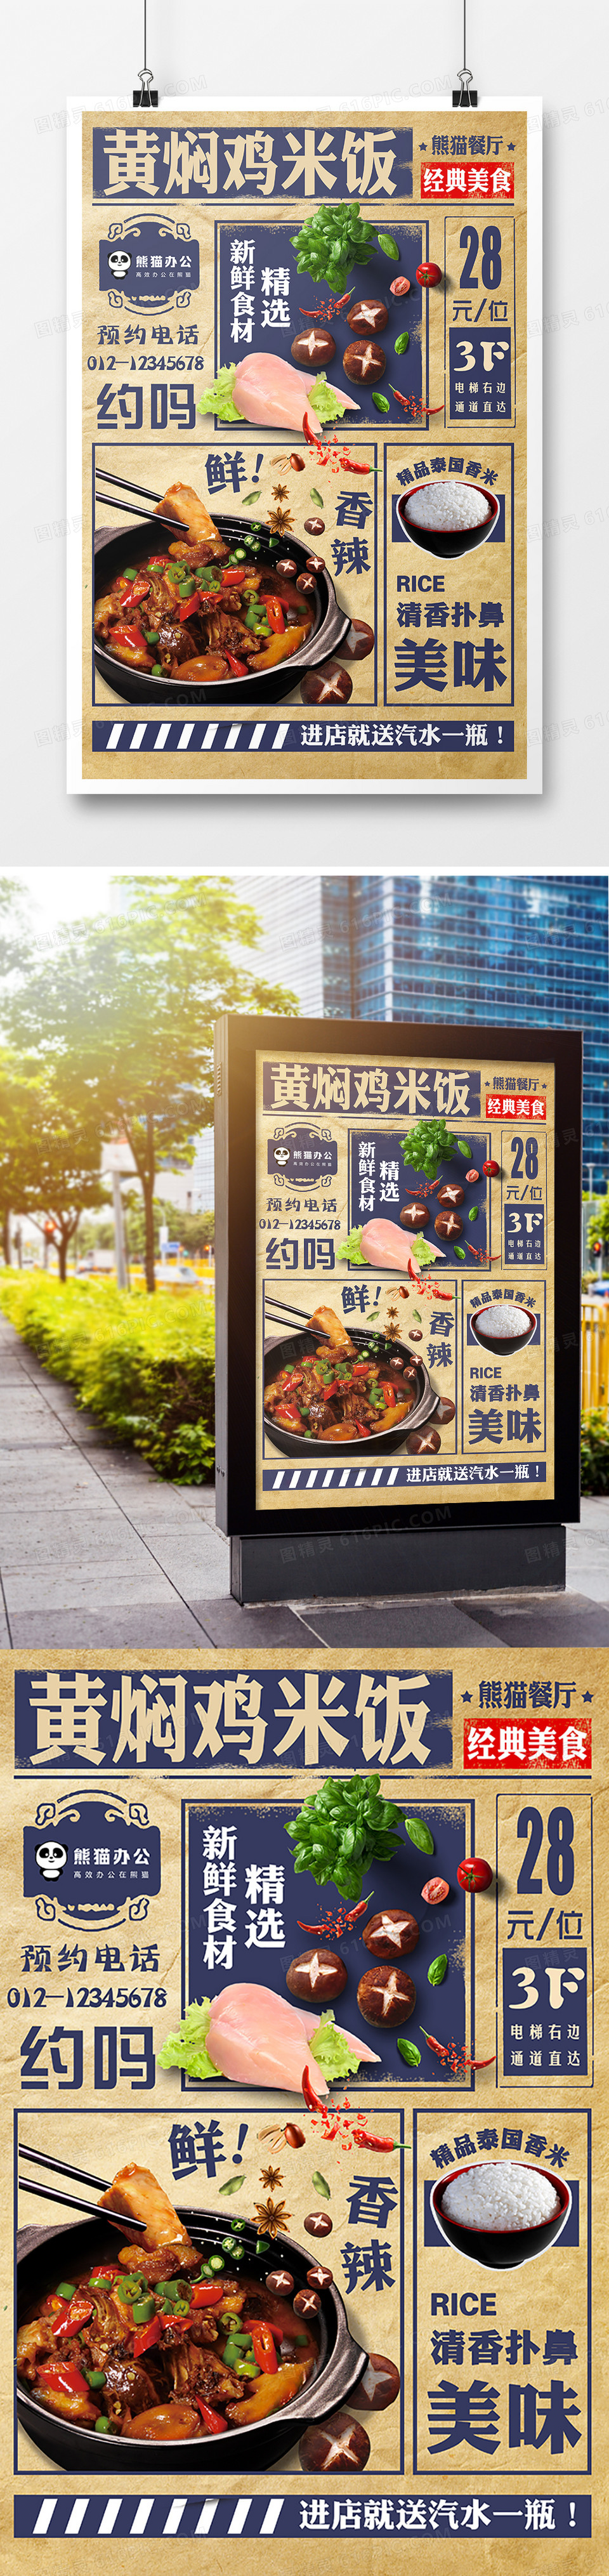 黄焖鸡米饭原创宣传海报模板设计